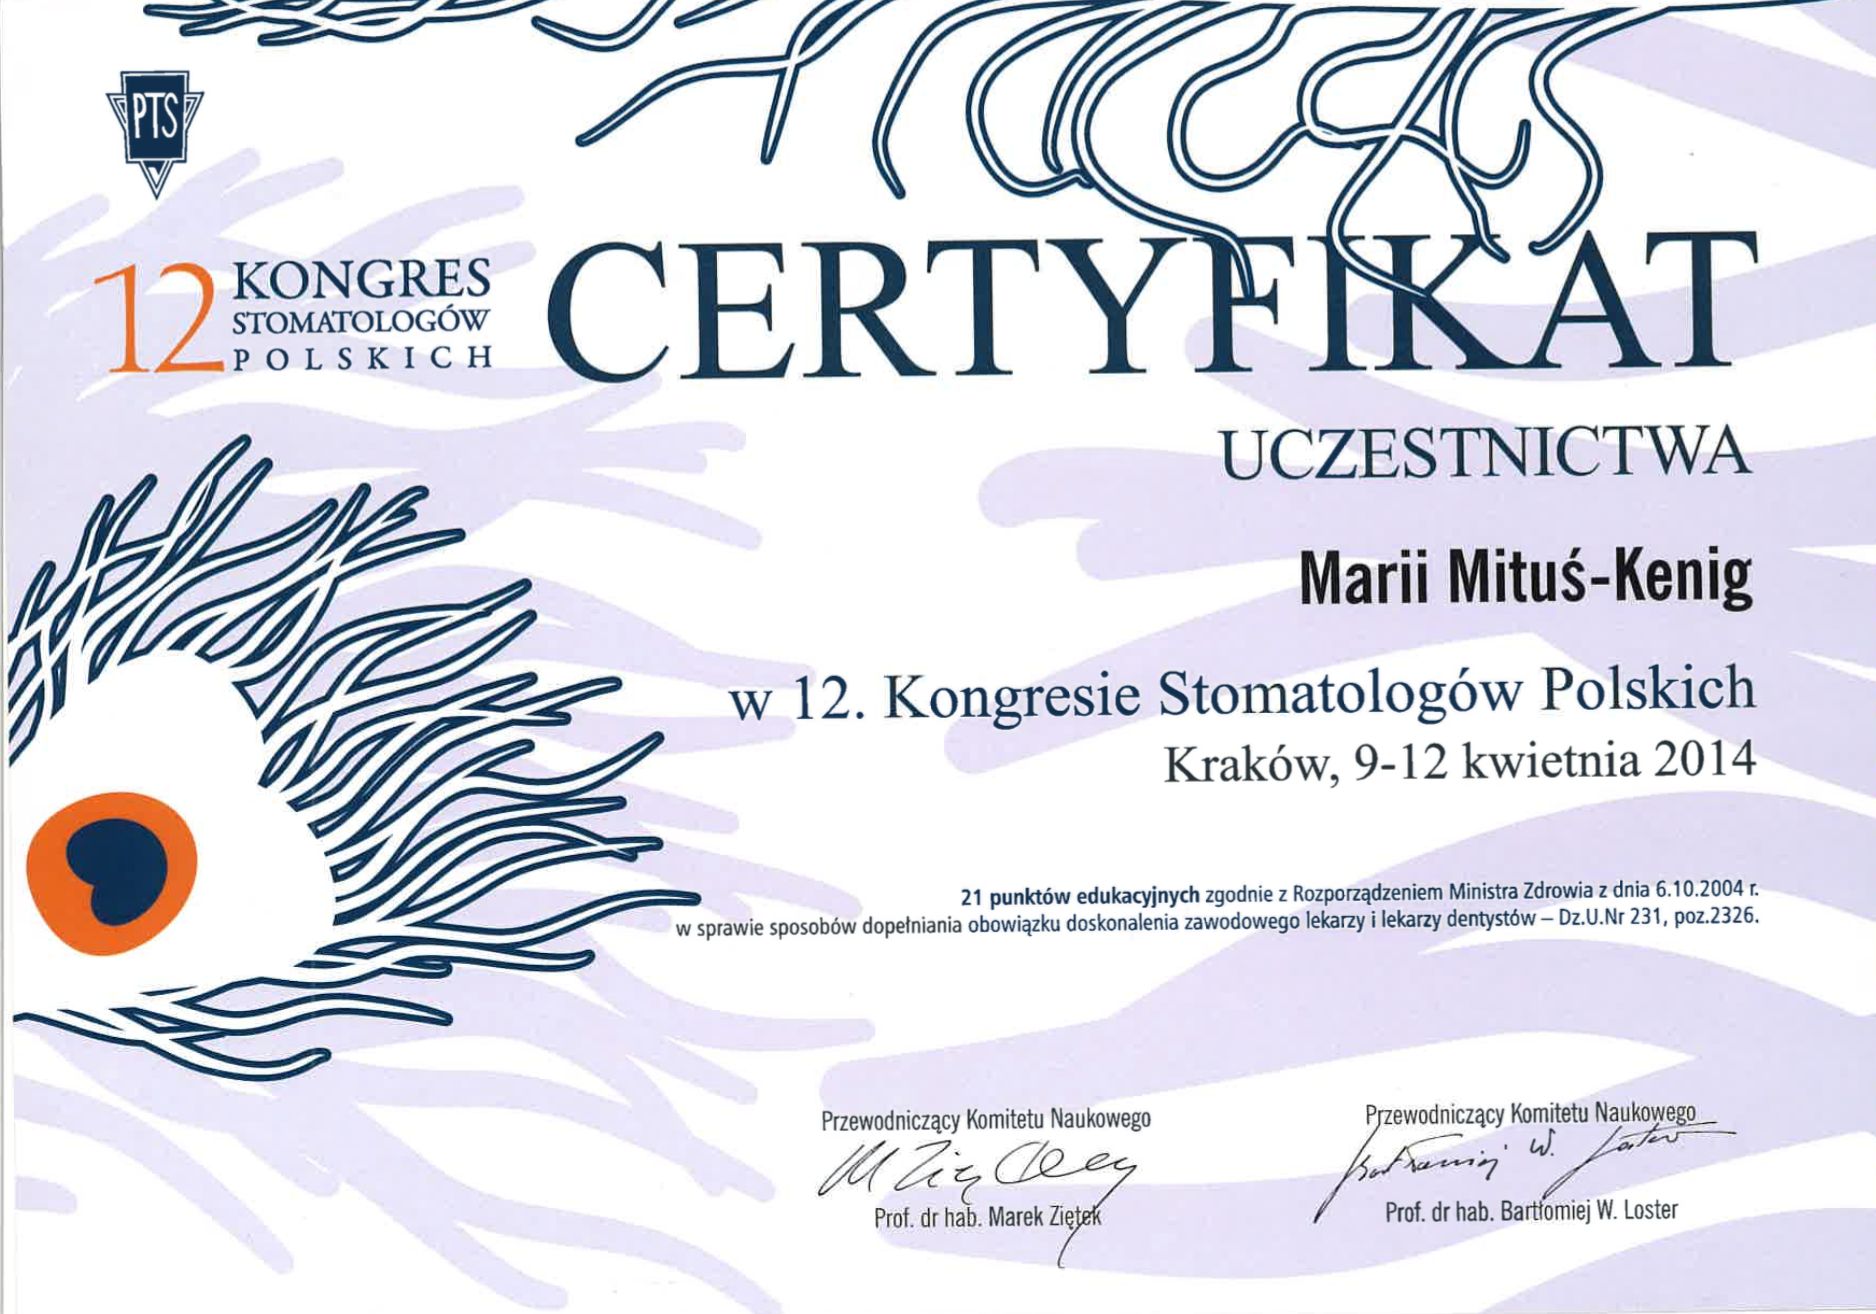 Certyfikat uczestnictwa w Kongresie Stomatologów Polskich